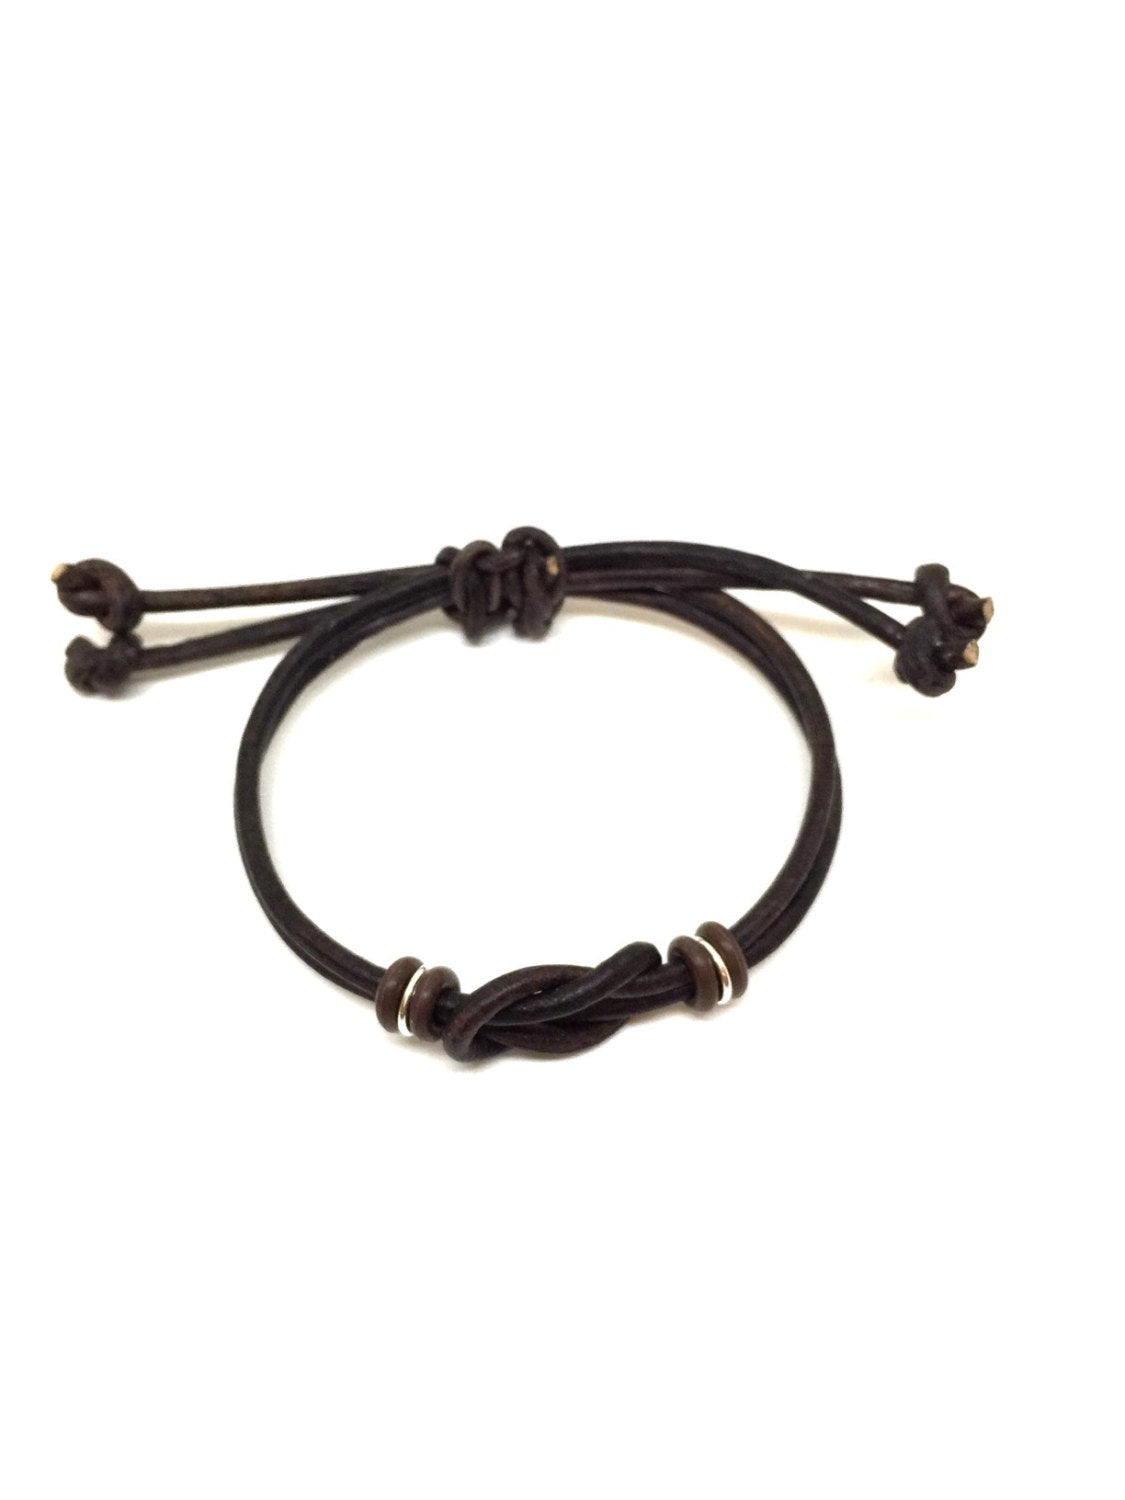 Celtic Knot Leather Bracelet | Gifts & Knots